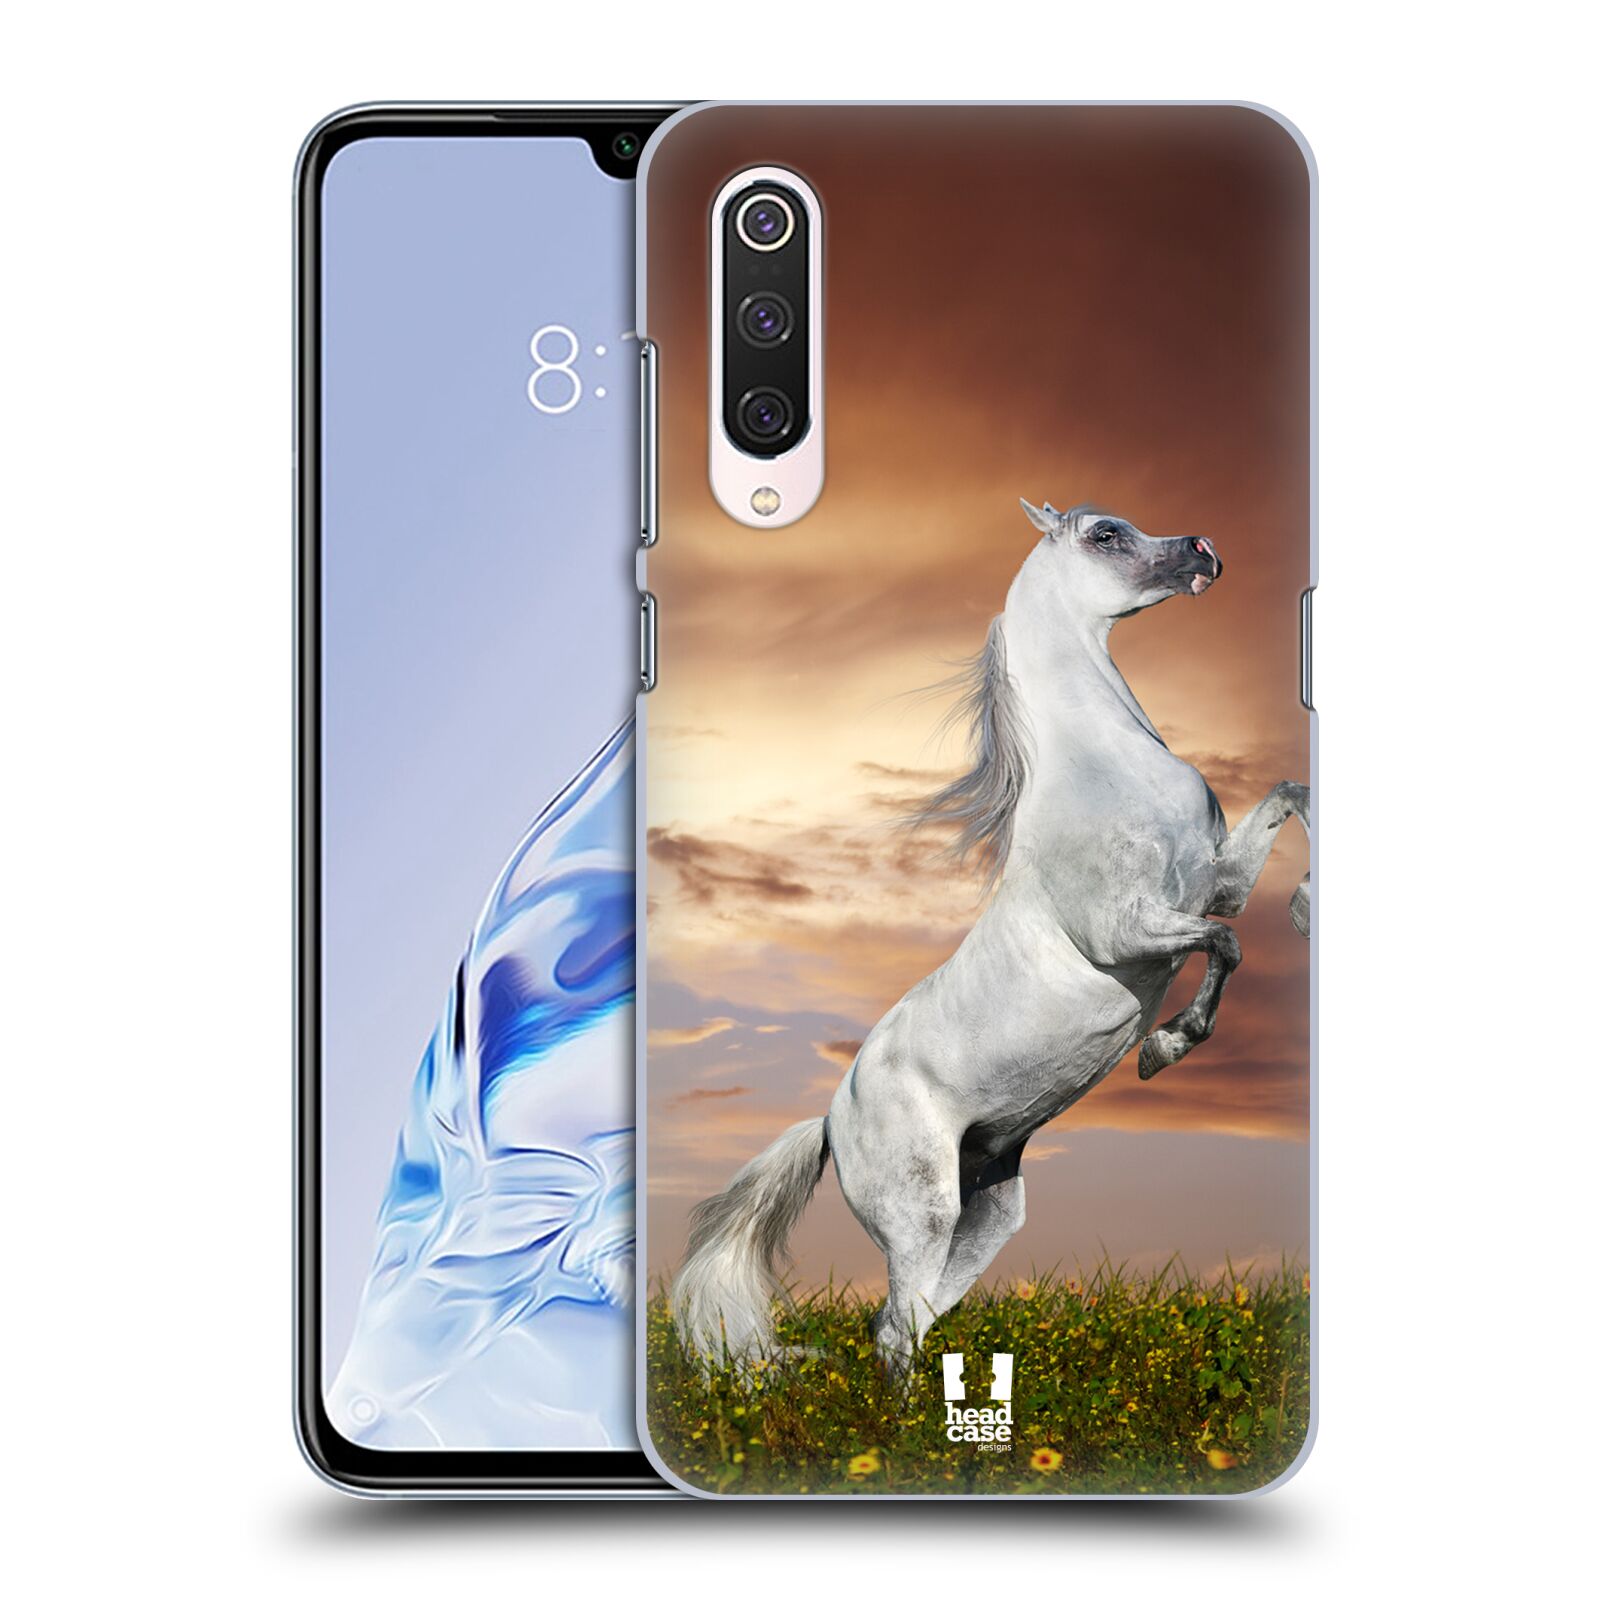 Zadní obal pro mobil Xiaomi Mi 9 PRO - HEAD CASE - Svět zvířat divoký kůň